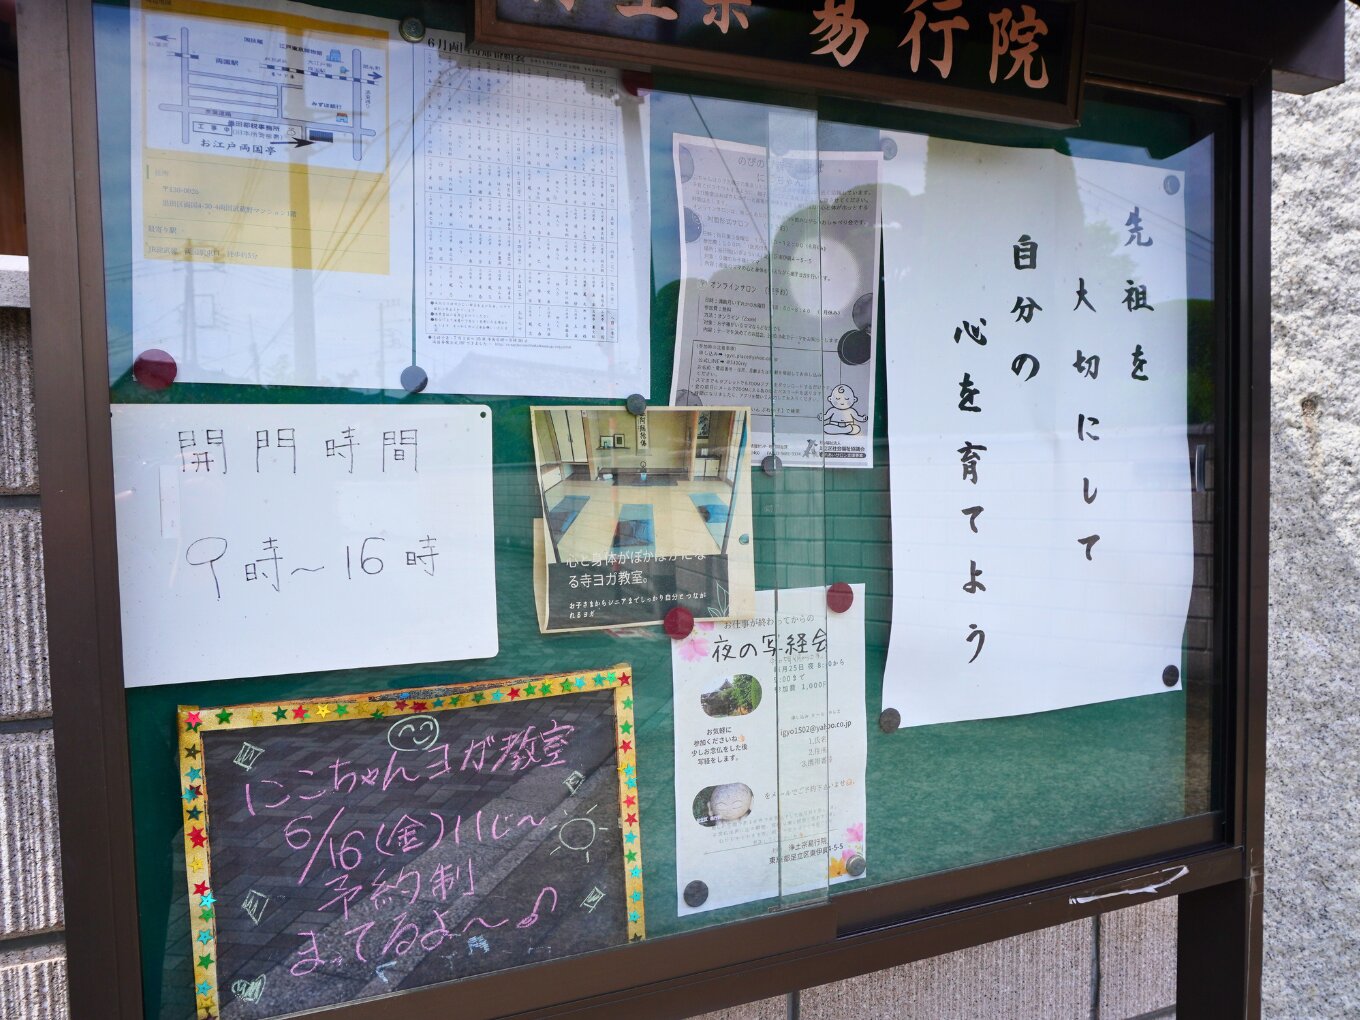 「にこちゃん」ヨガ教室のスケジュールが掲示されている、易行院入口の掲示板